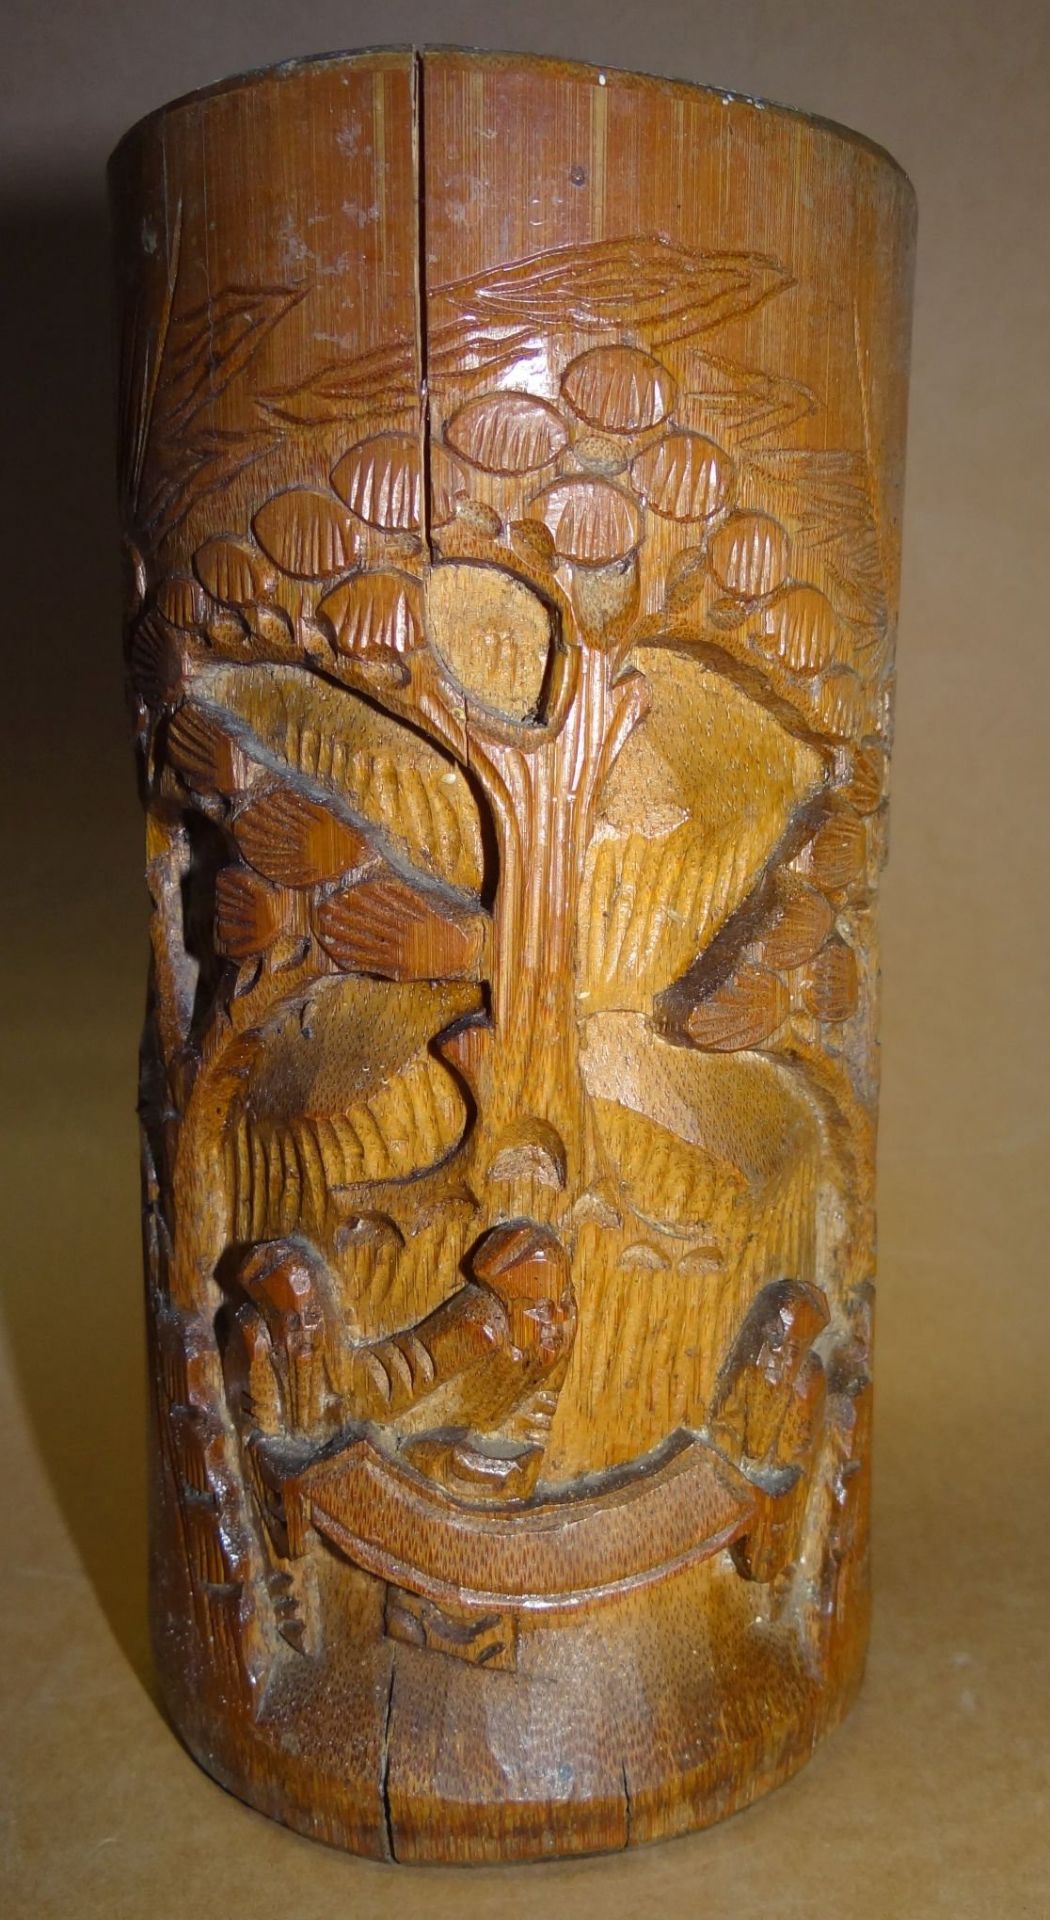 Pinselhalter, Holz beschnitzt, Spannungsriss, H-17 cm, D-7,5 cm